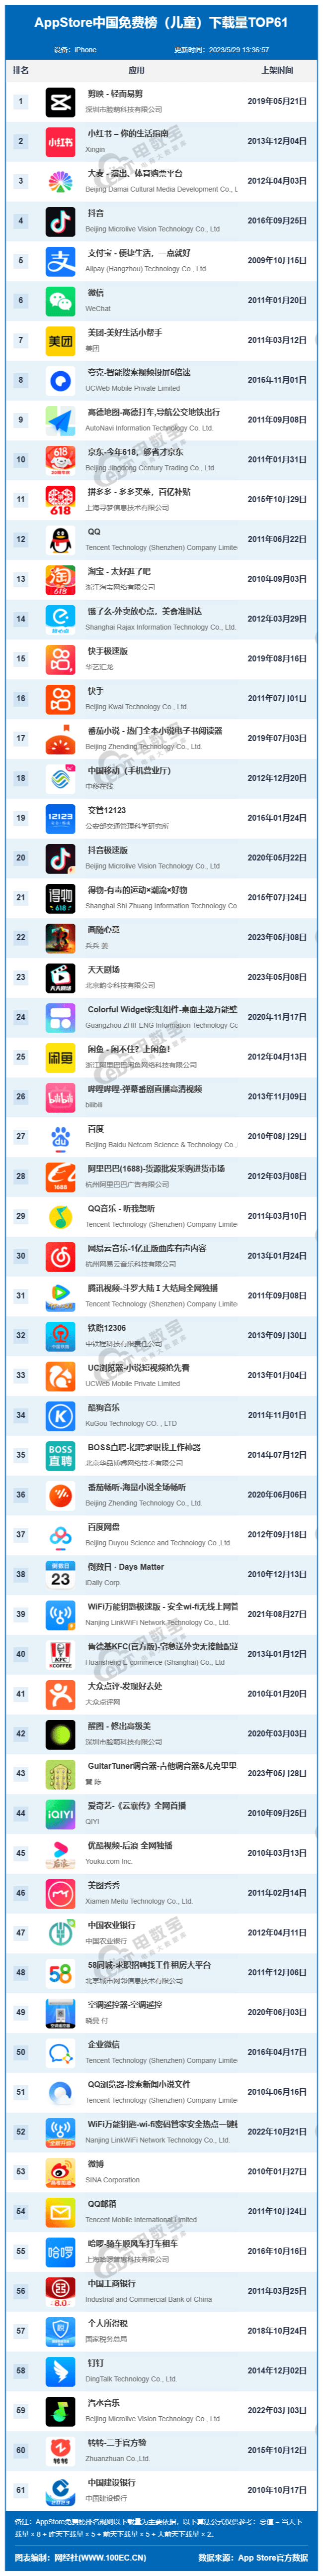 5月AppStore中国免费榜(儿童)TOP61：剪映抖音支付宝等位居TOP5